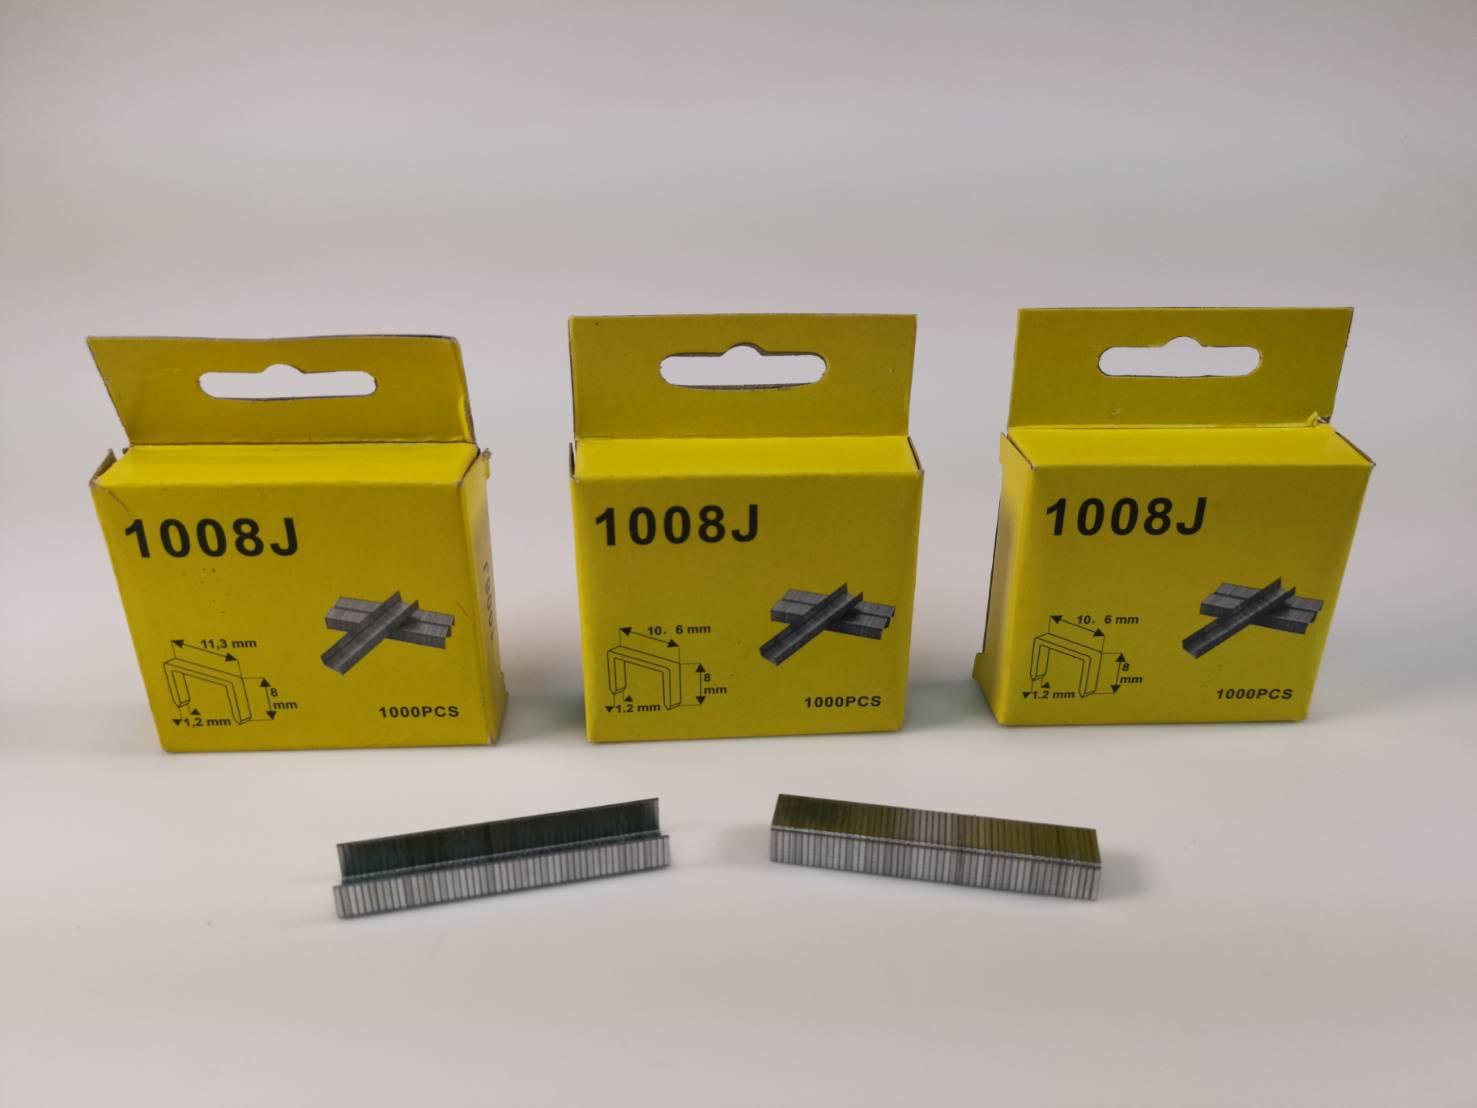 TIGON ลูกแม็ก ลูกแม็กยิงบอร์ด ลวดเย็บกระดาษ ขนาด11.3x8x1.2mm (ใช้กับเครื่องยิงแม็ก 4-14 mm) แพ็ค 3 (บรรจุ 1000 pcs x 3 แพ็ค = 3000 pcs. )